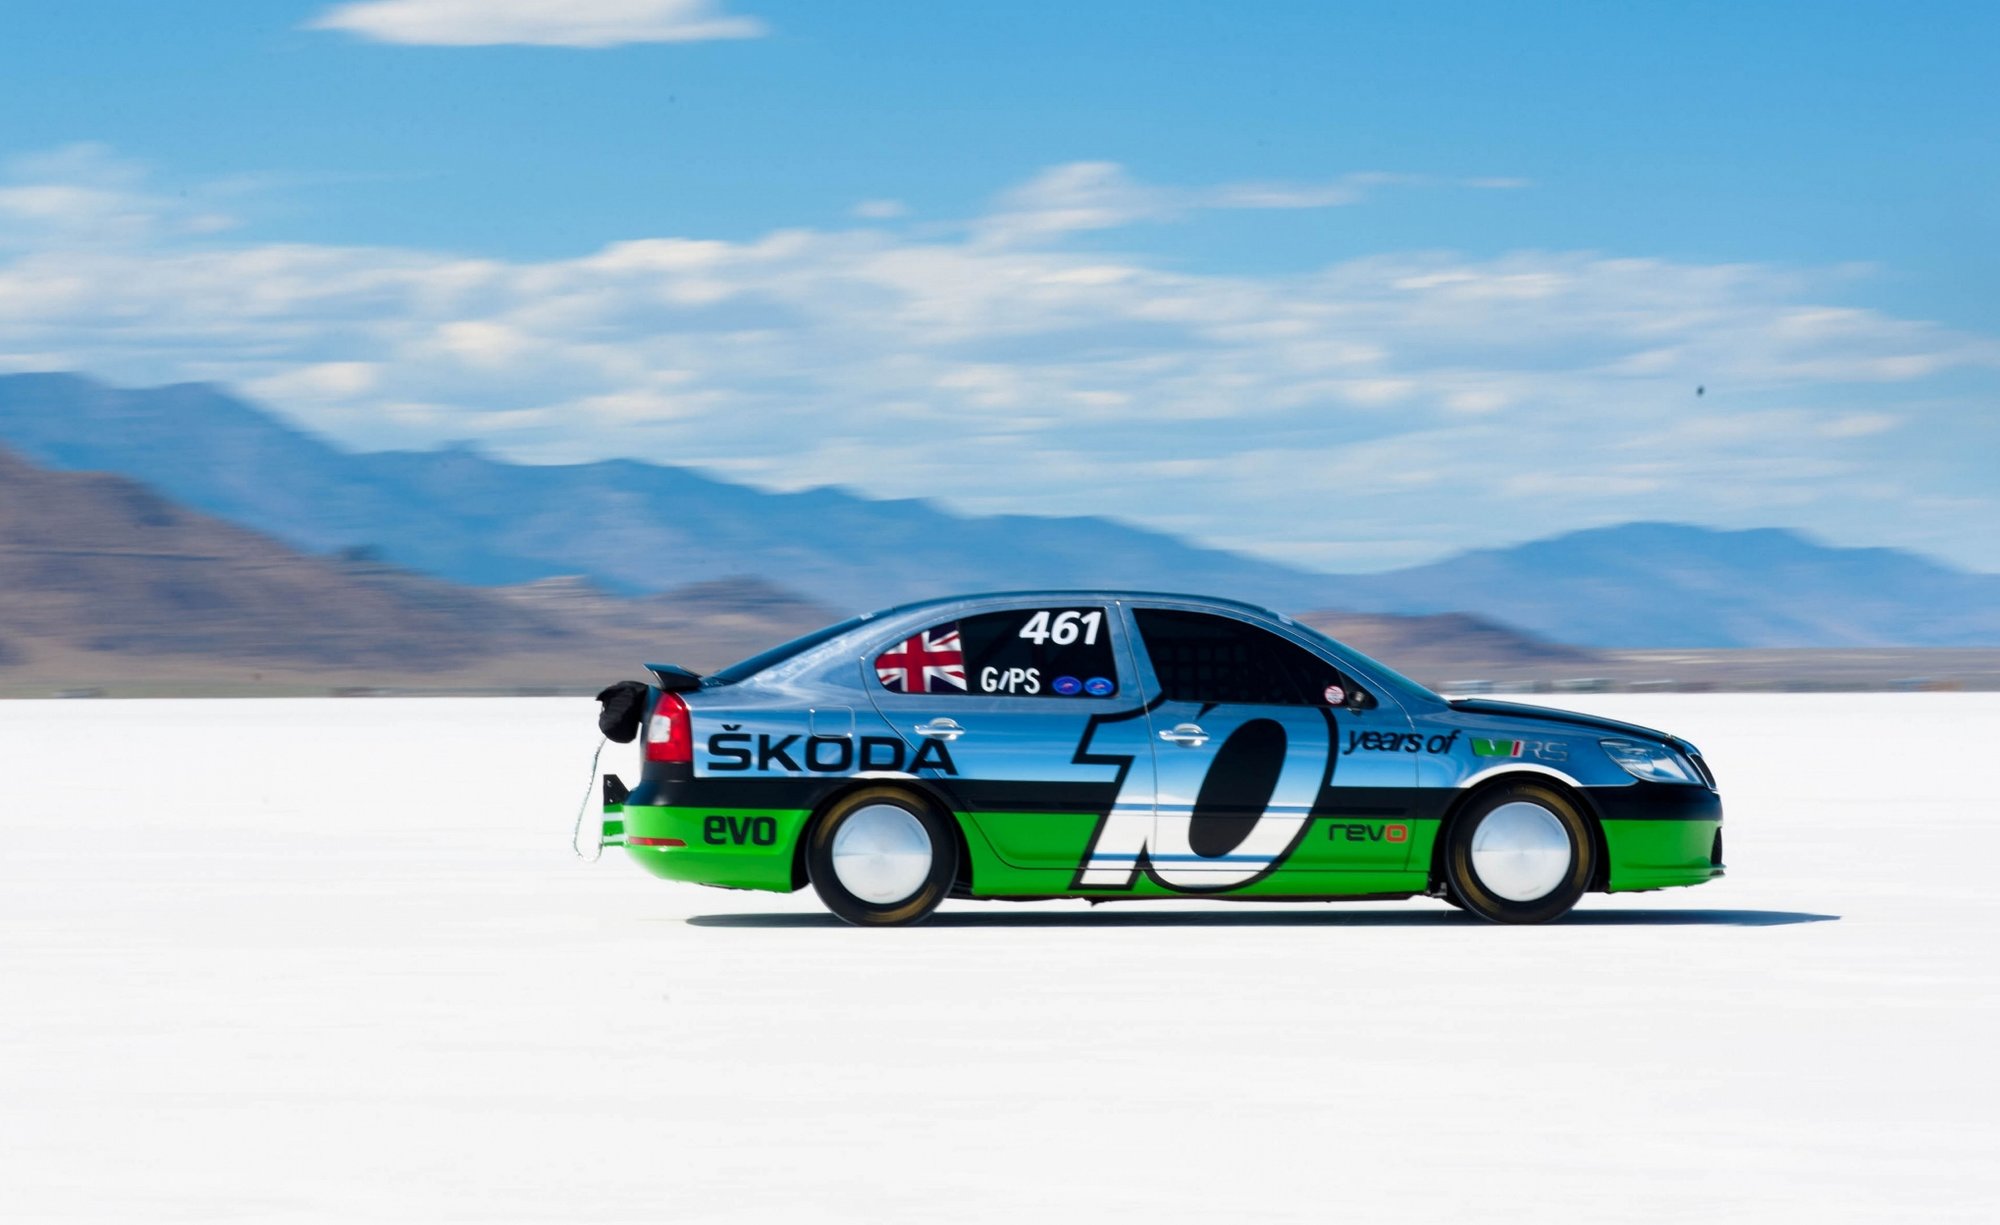 Škoda Octavia s turbomotorem 2,0 l dosáhla na solných pláních v Bonneville rychlosti 365 km/h